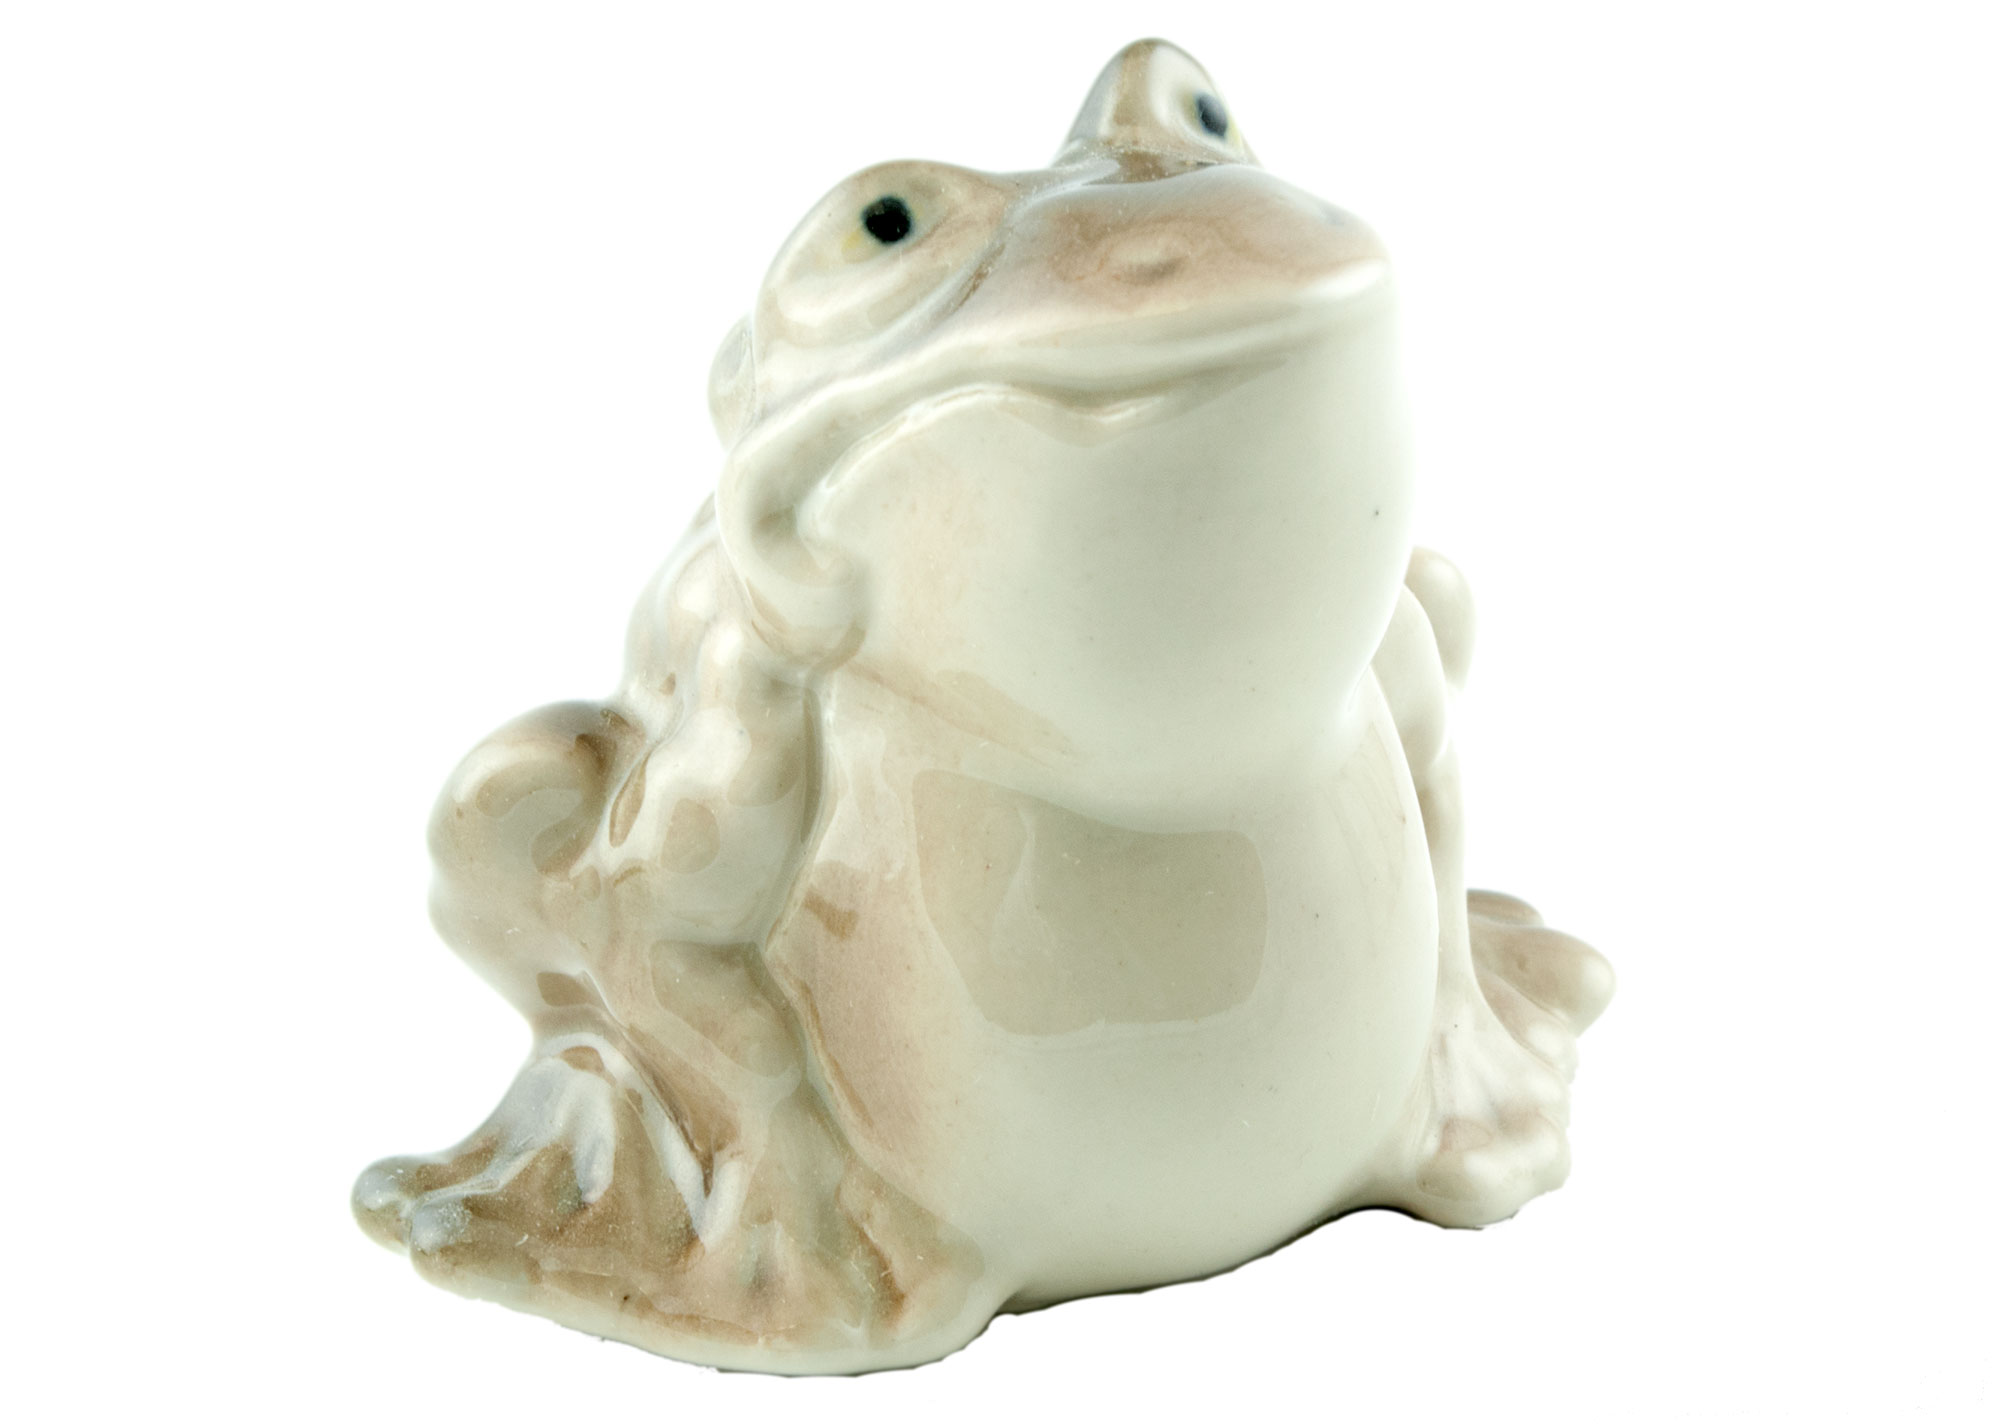 Buy Frog Porcelain Figurine at GoldenCockerel.com